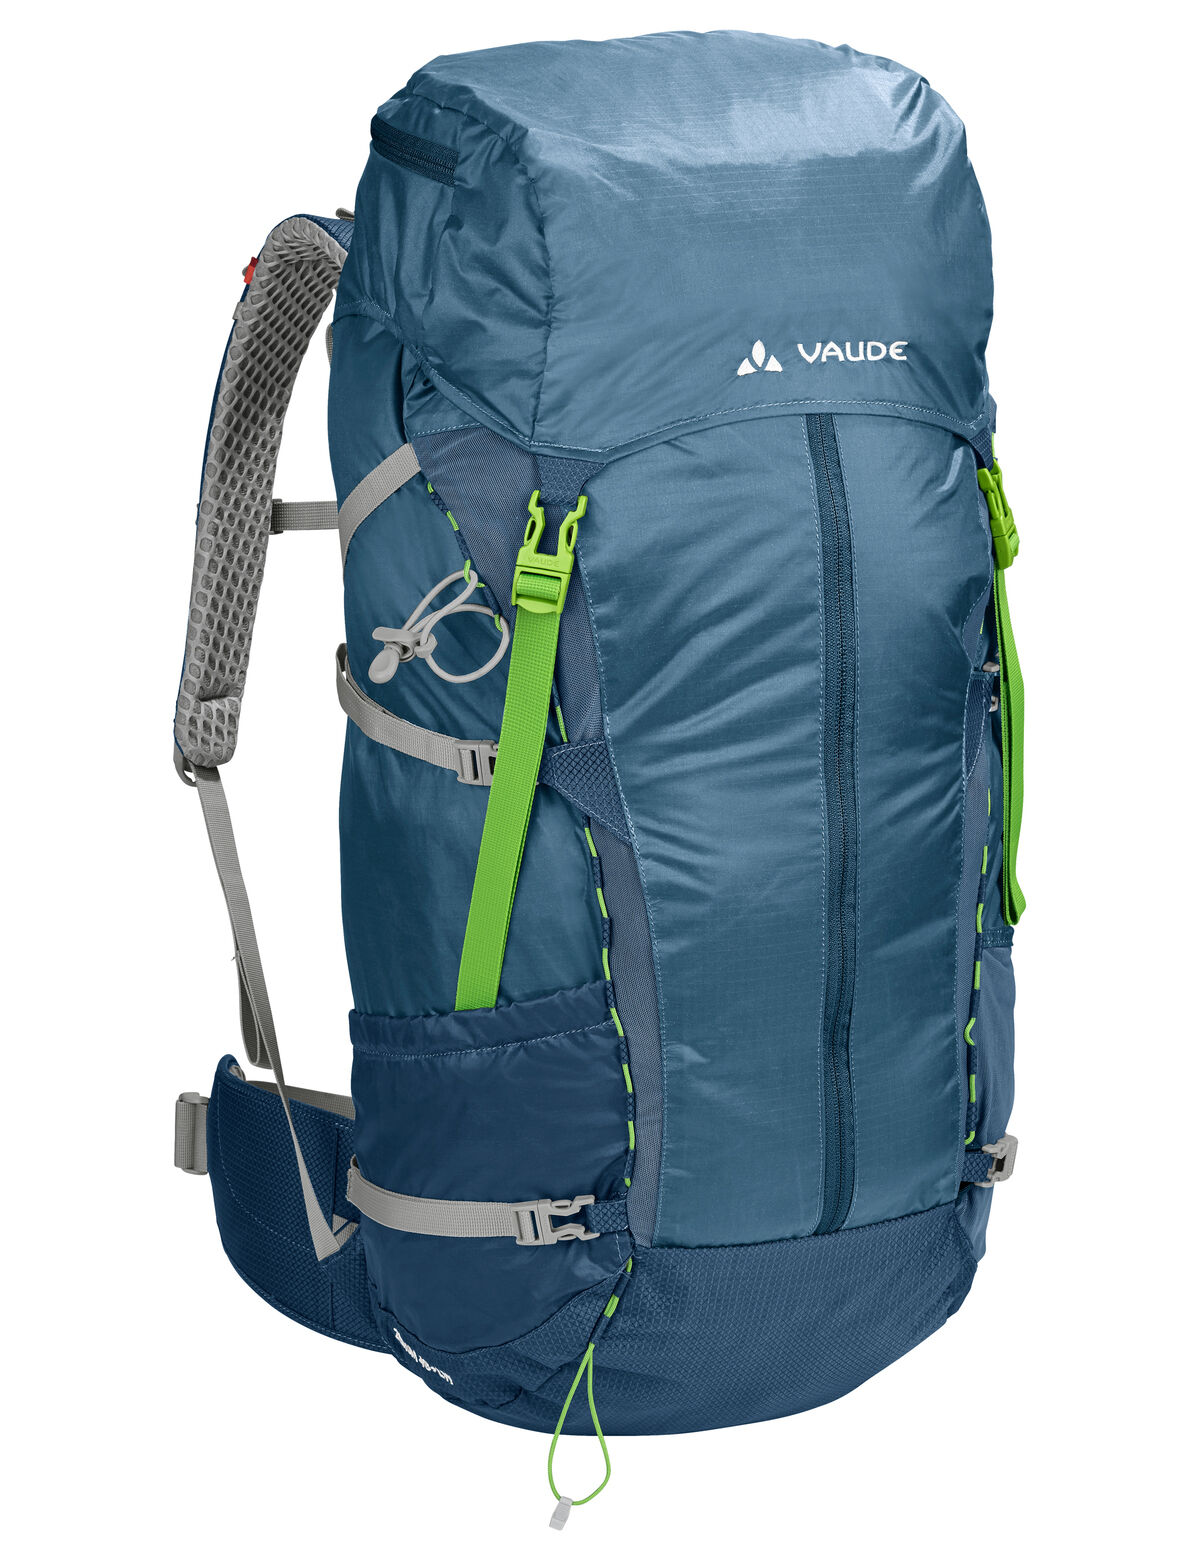 Vaude - Zerum 48+ LW - Hiking backpack